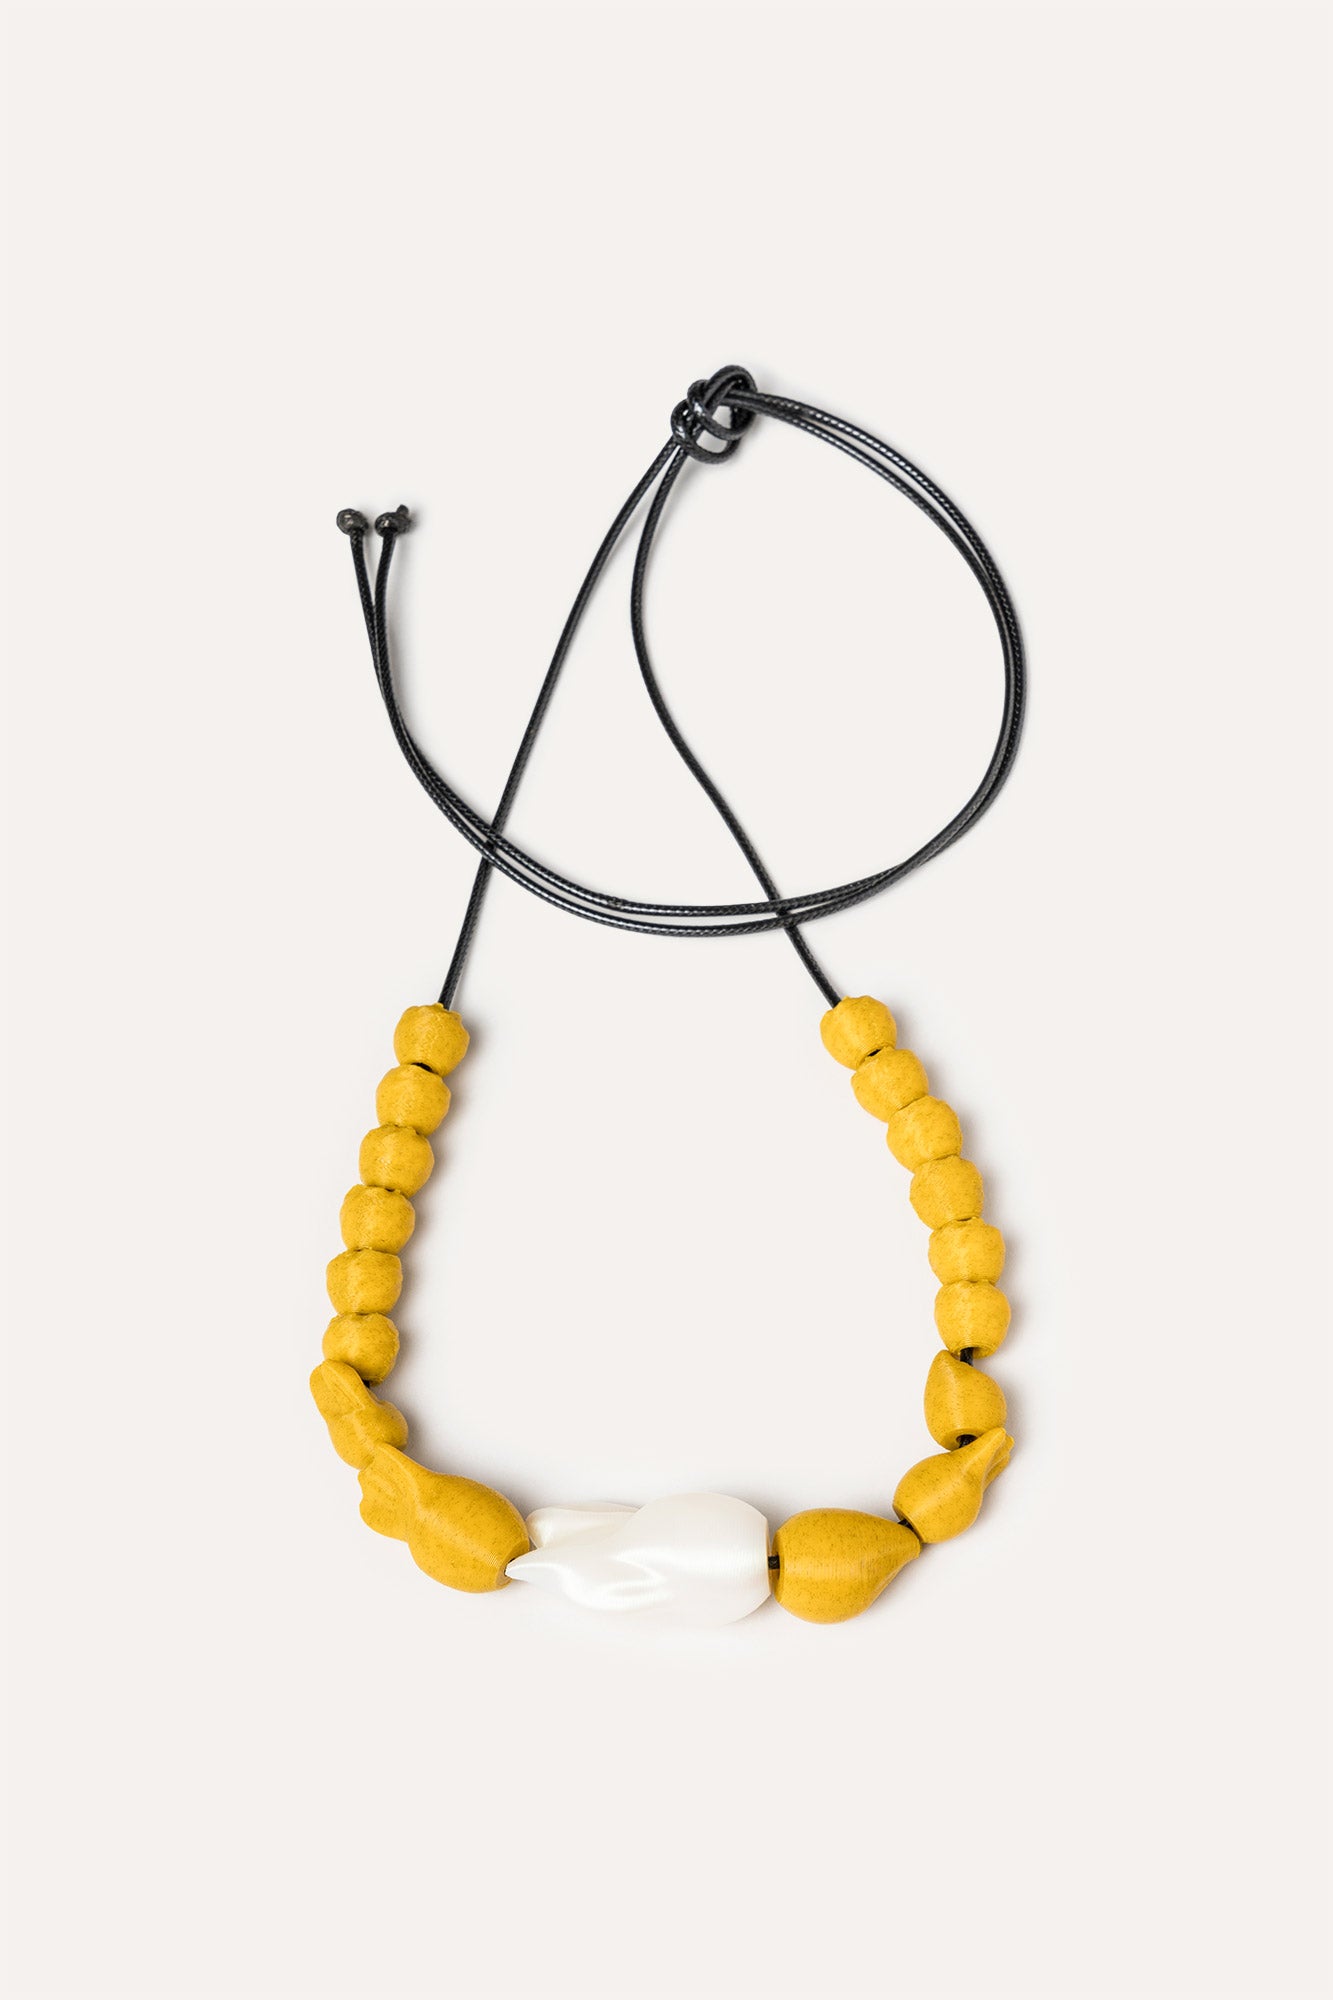 Yellow Beads vegan necklace 3d 